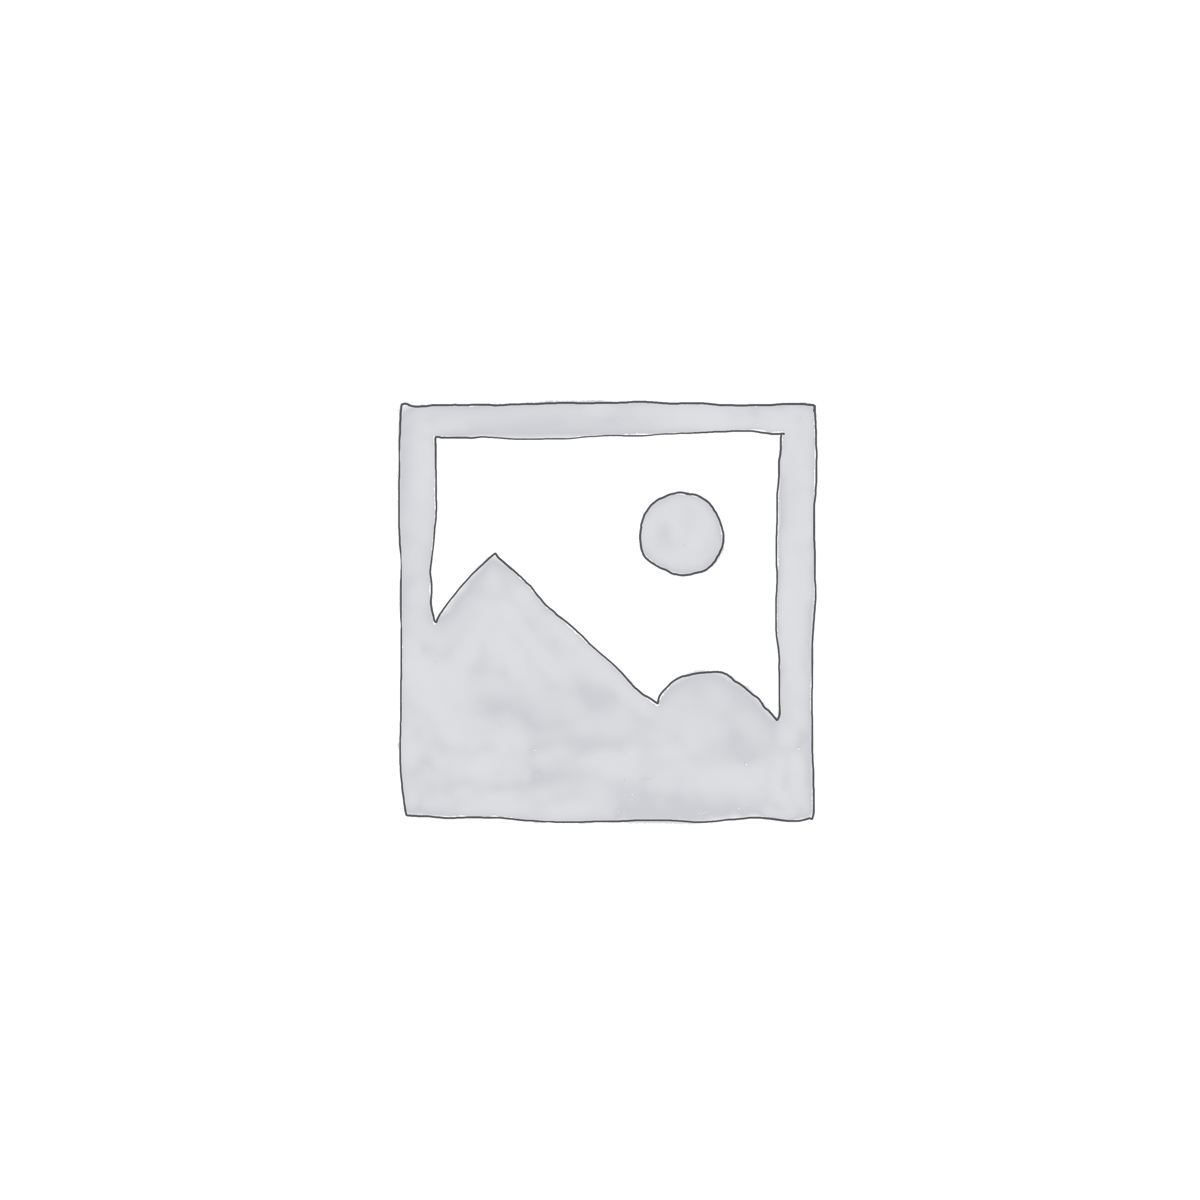 کاور کوله پشتی کوهنوردی مدل S00-65